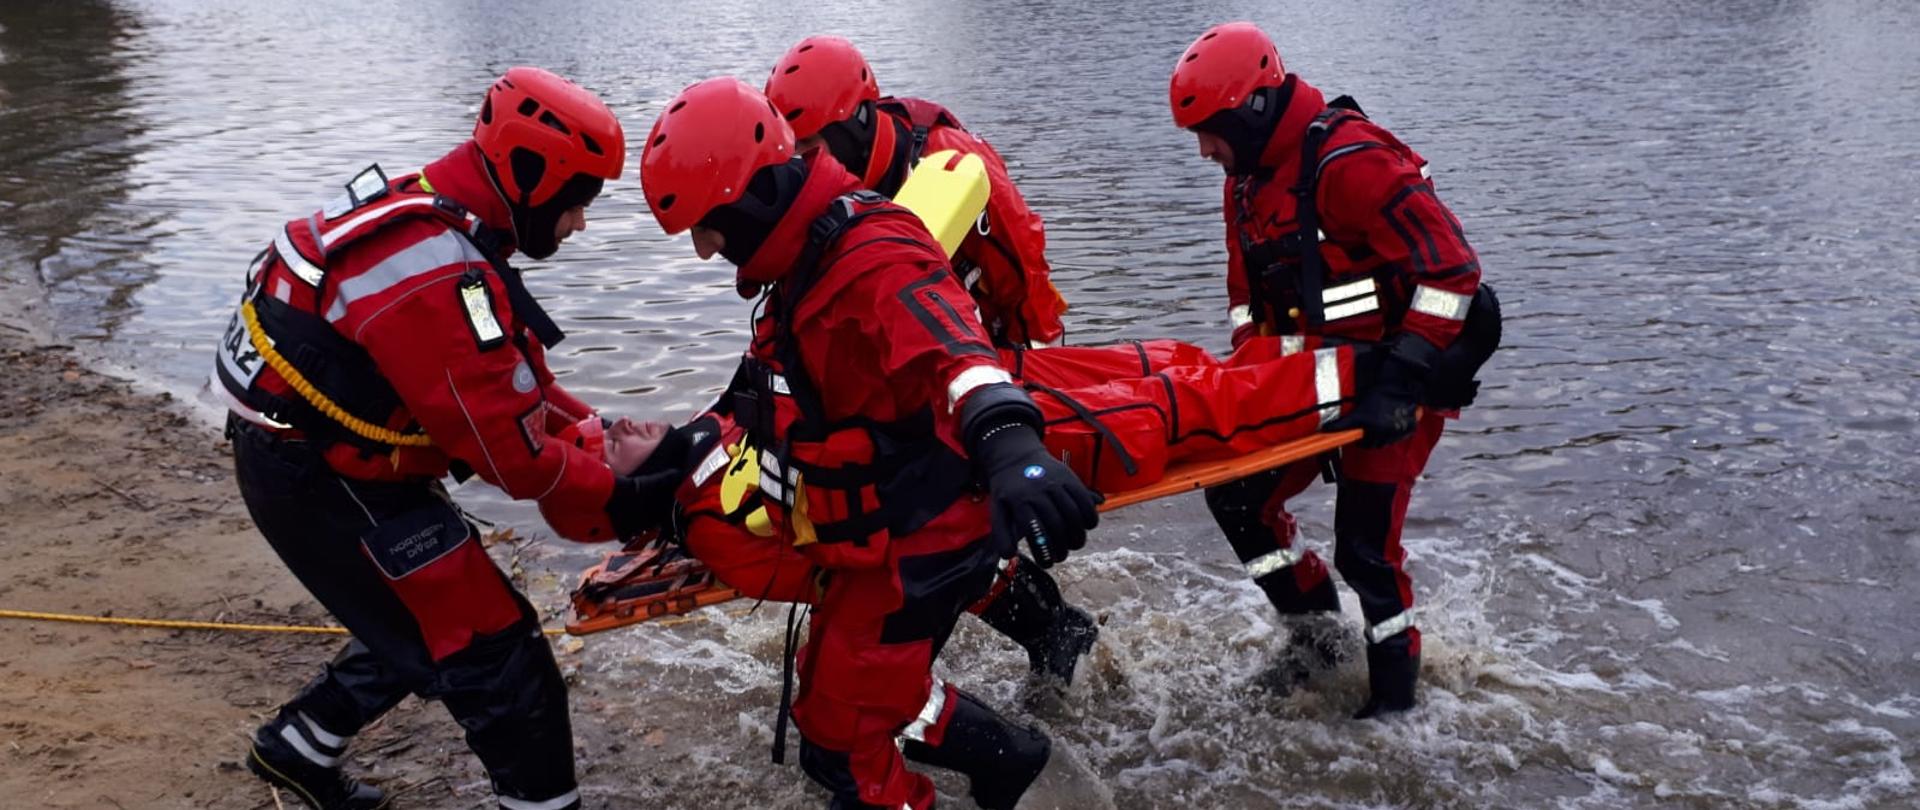 czterech ratowników wynoszących z wody poszkodowanego na noszach typu deska 